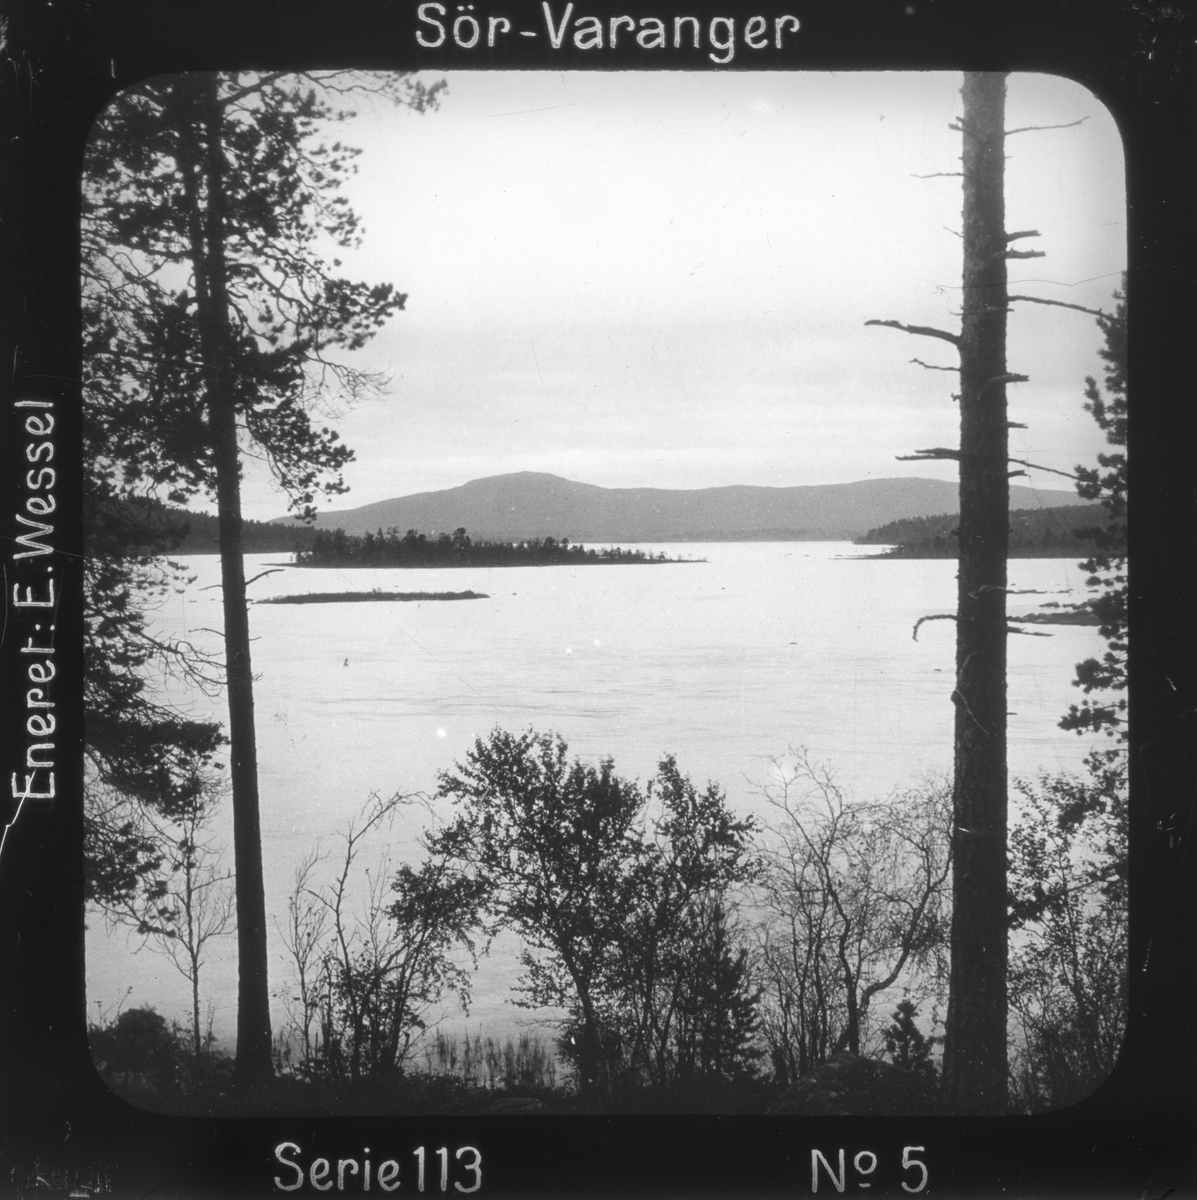 Oversiktsbilde over Vaggatemsjøen, Pasvikdalen, Sør-Varanger, Finnmark, før 1900.
Motivet har nr.5 i lysbildeforedraget kalt  "I lappernes land - Sør-Varanger", utgitt i Nerliens Lysbilledserier, serie nr 113. 